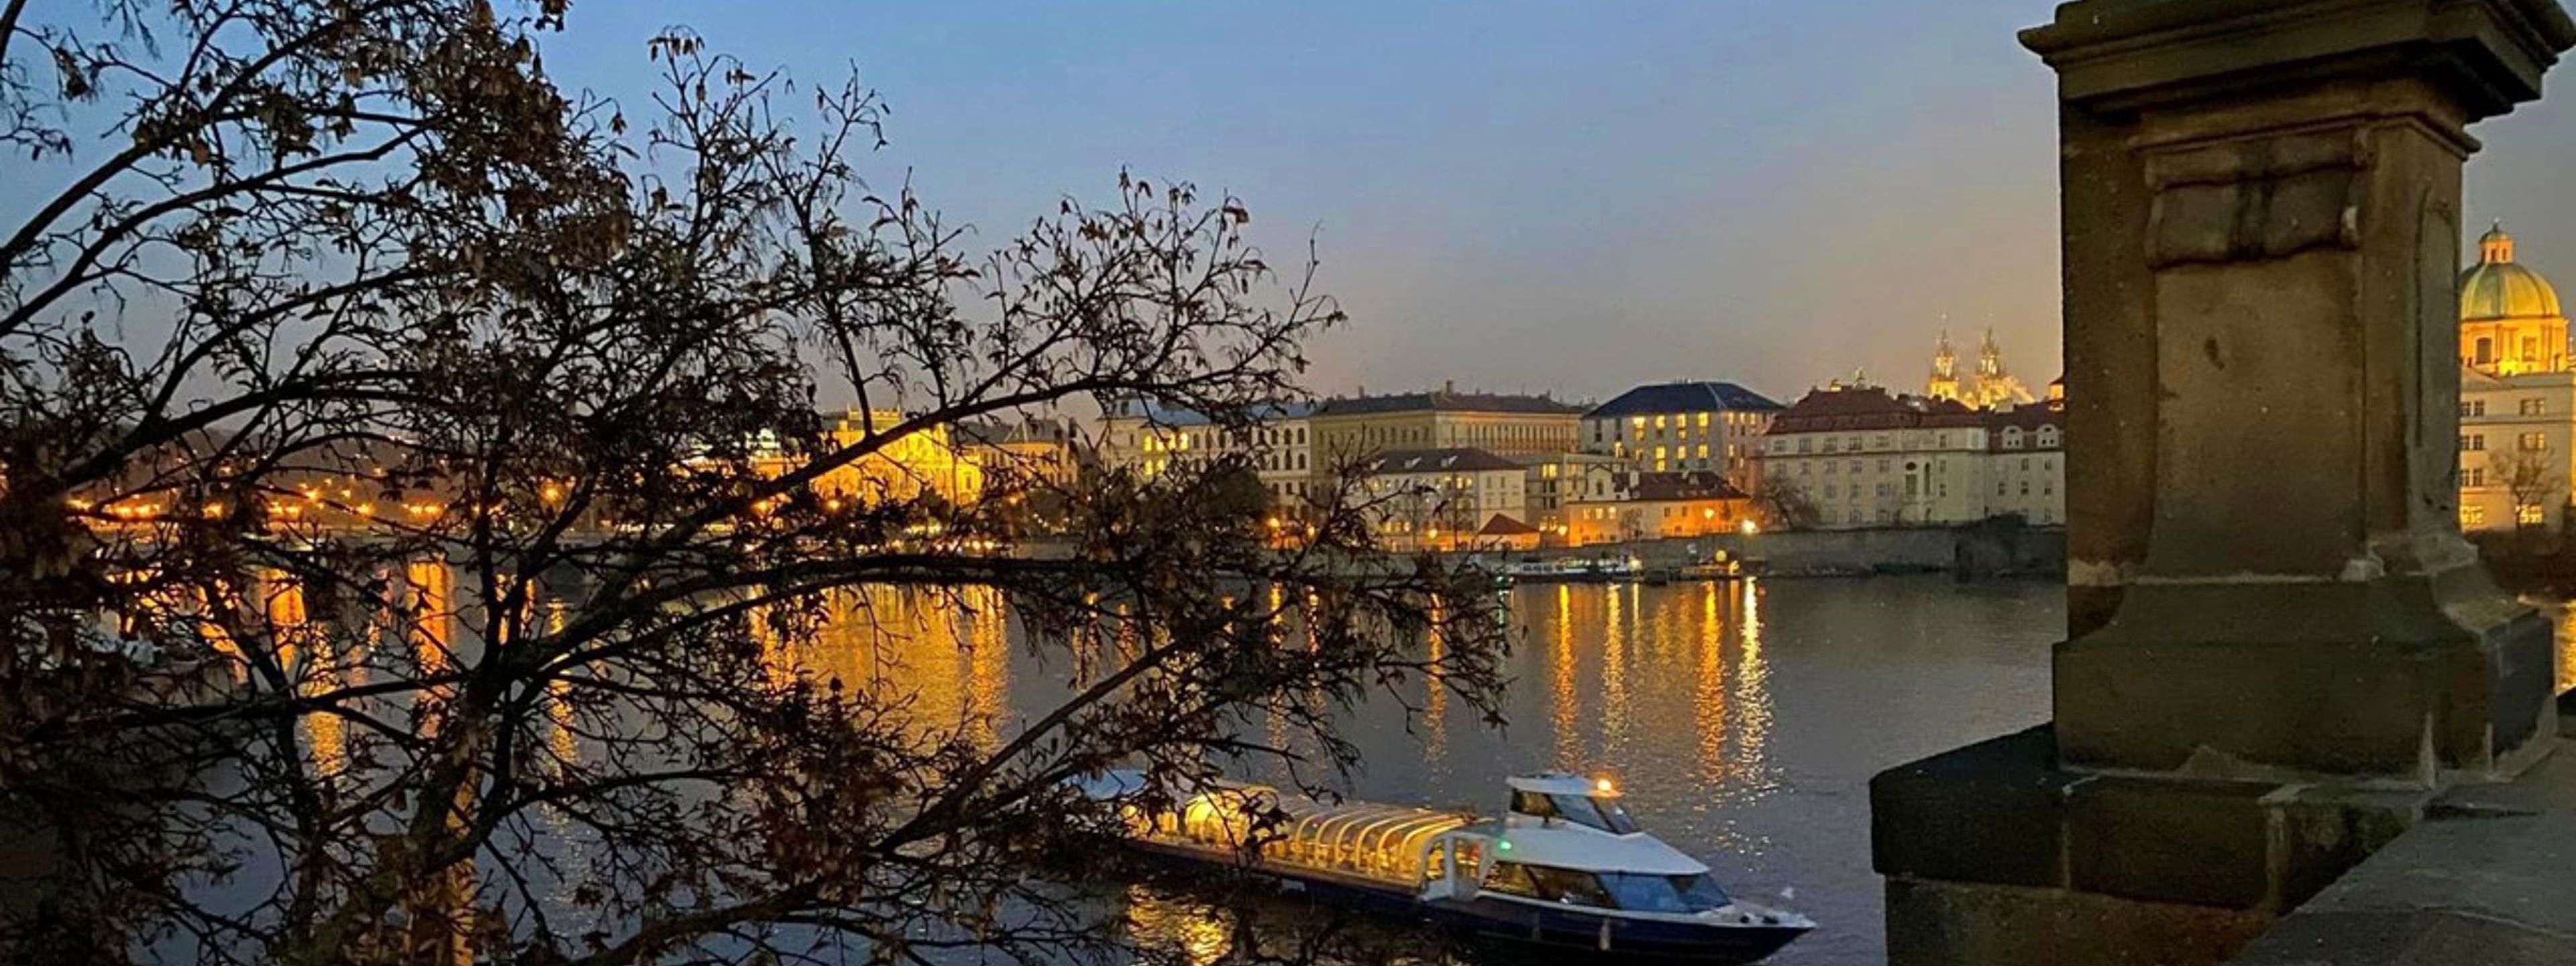 Ei elv i Praha i skumringen, på elva er det ein båt, i framgrunnen er det ein statue